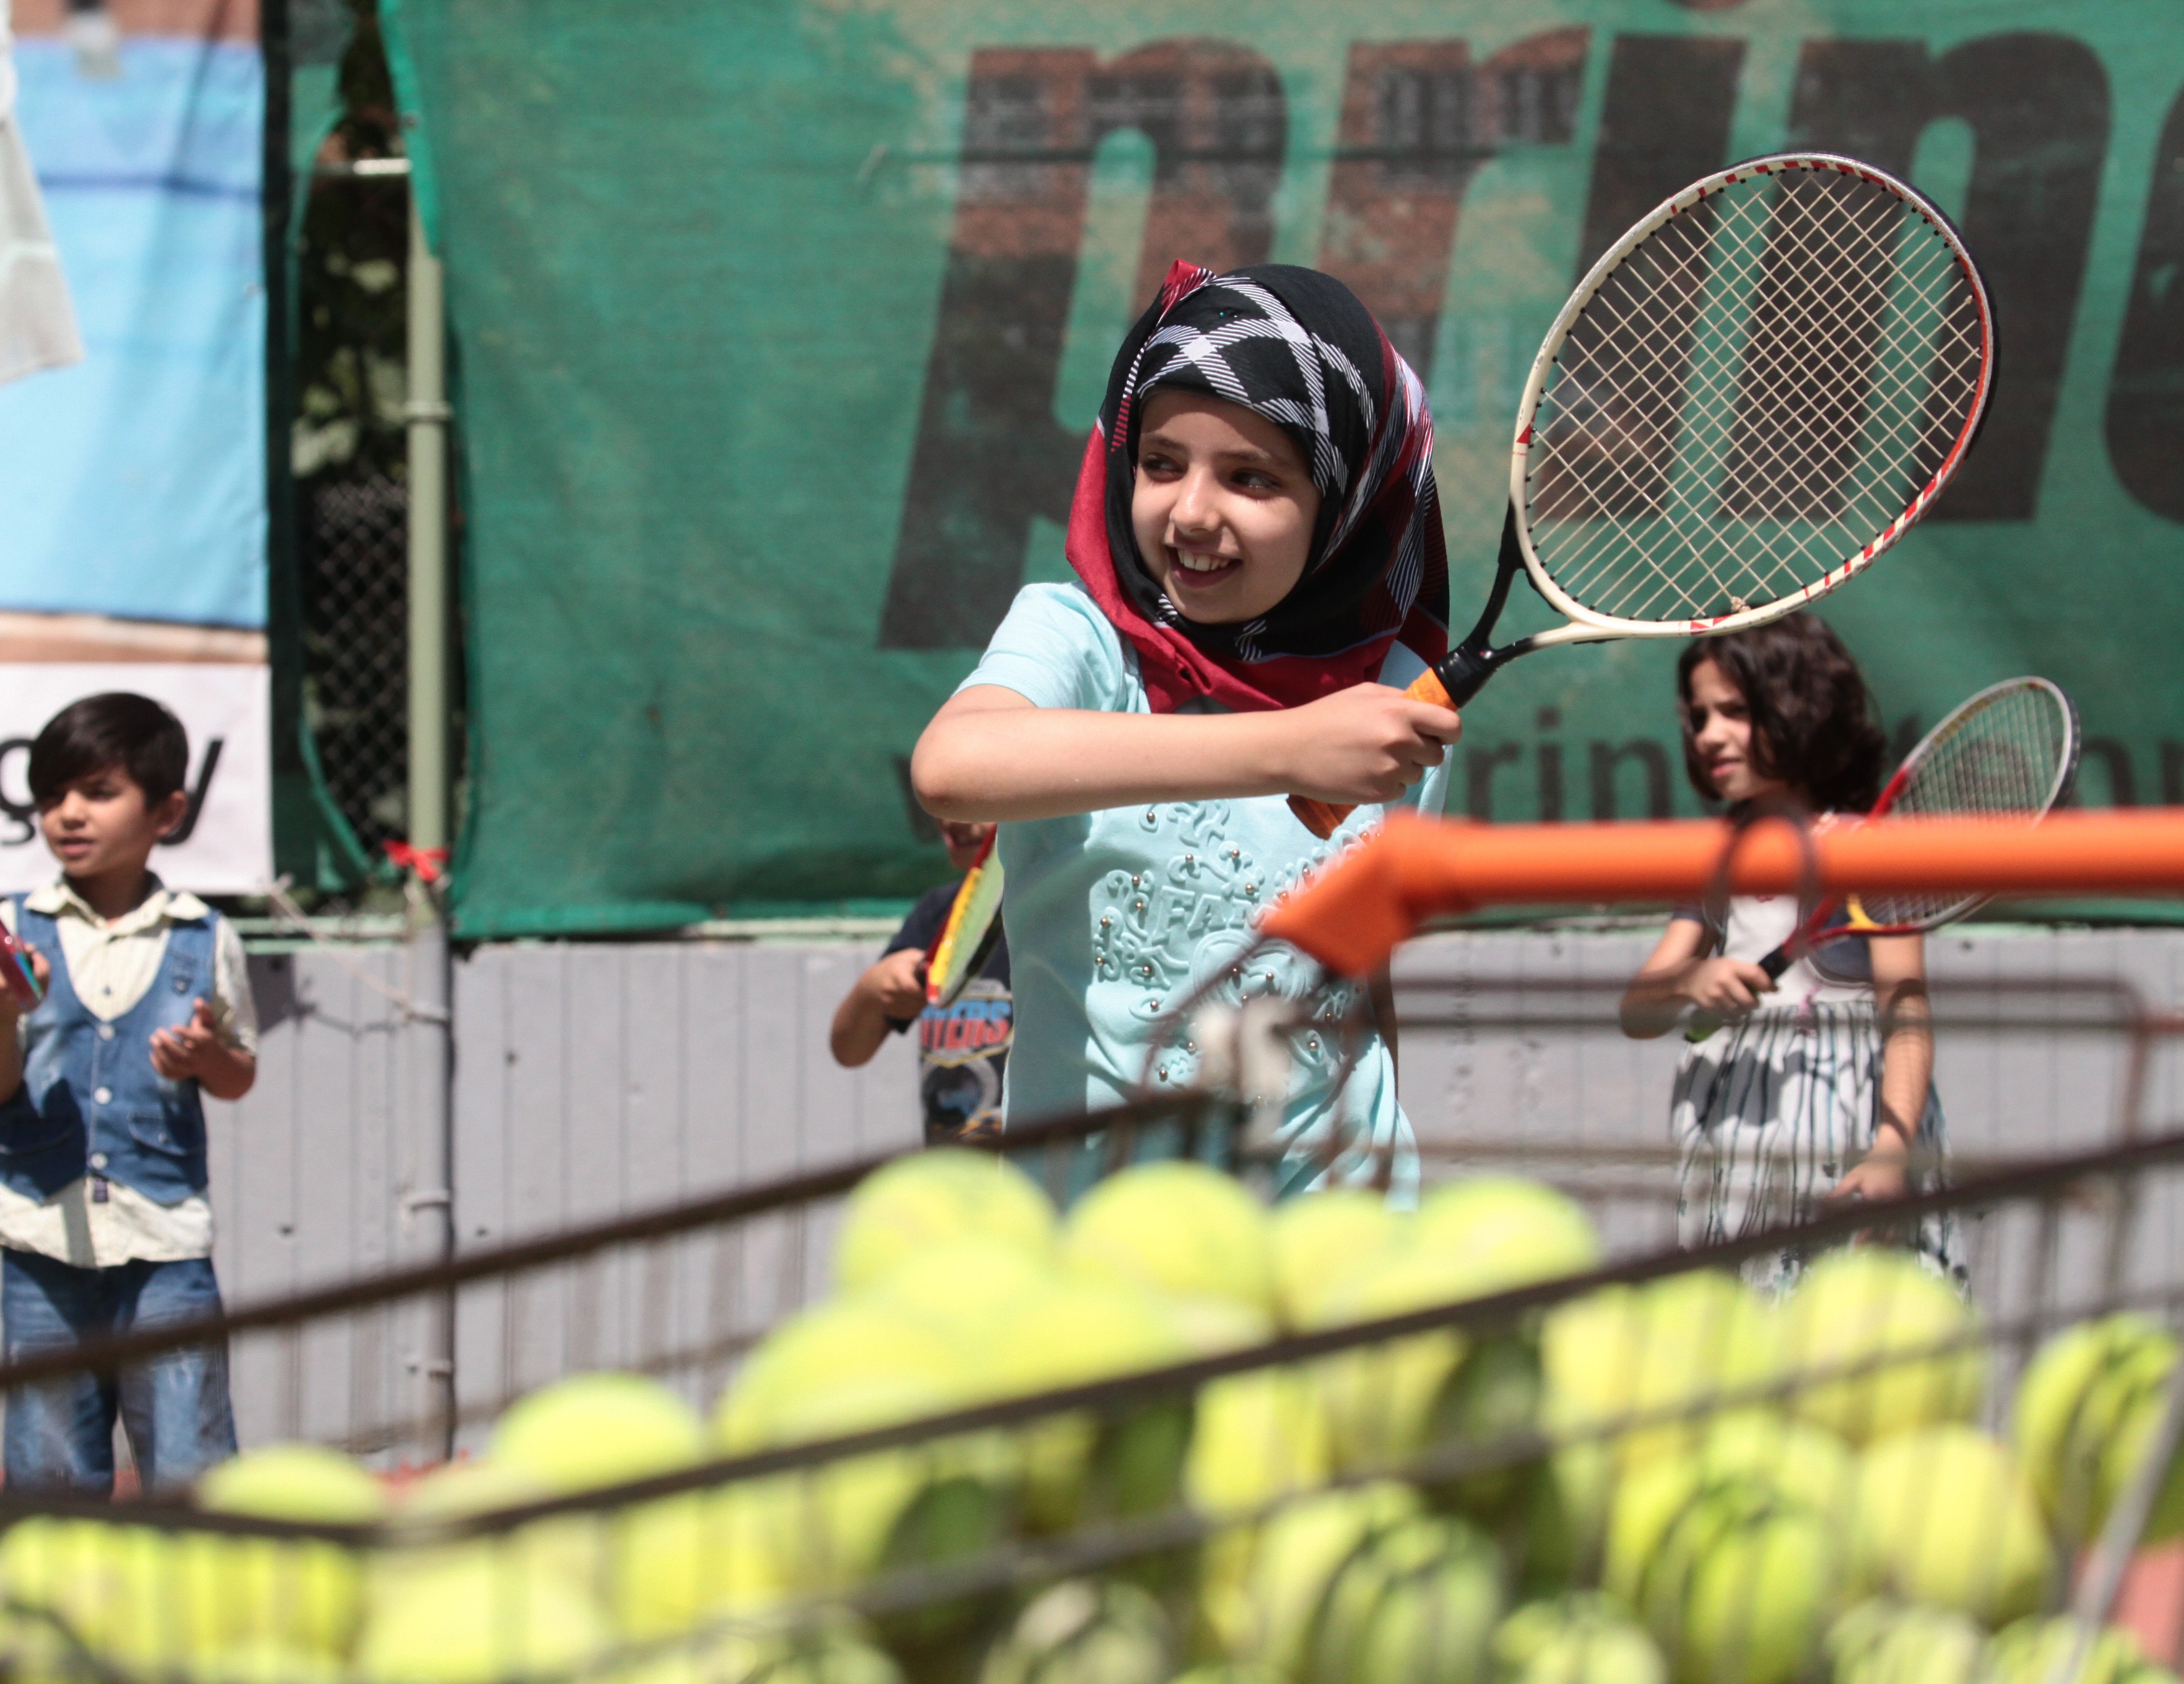 طفلة سورية تتدرب على التنس في صالة رياضية في أضنة النركية- الإثنين 17 تموز 2017 (إخلاص)